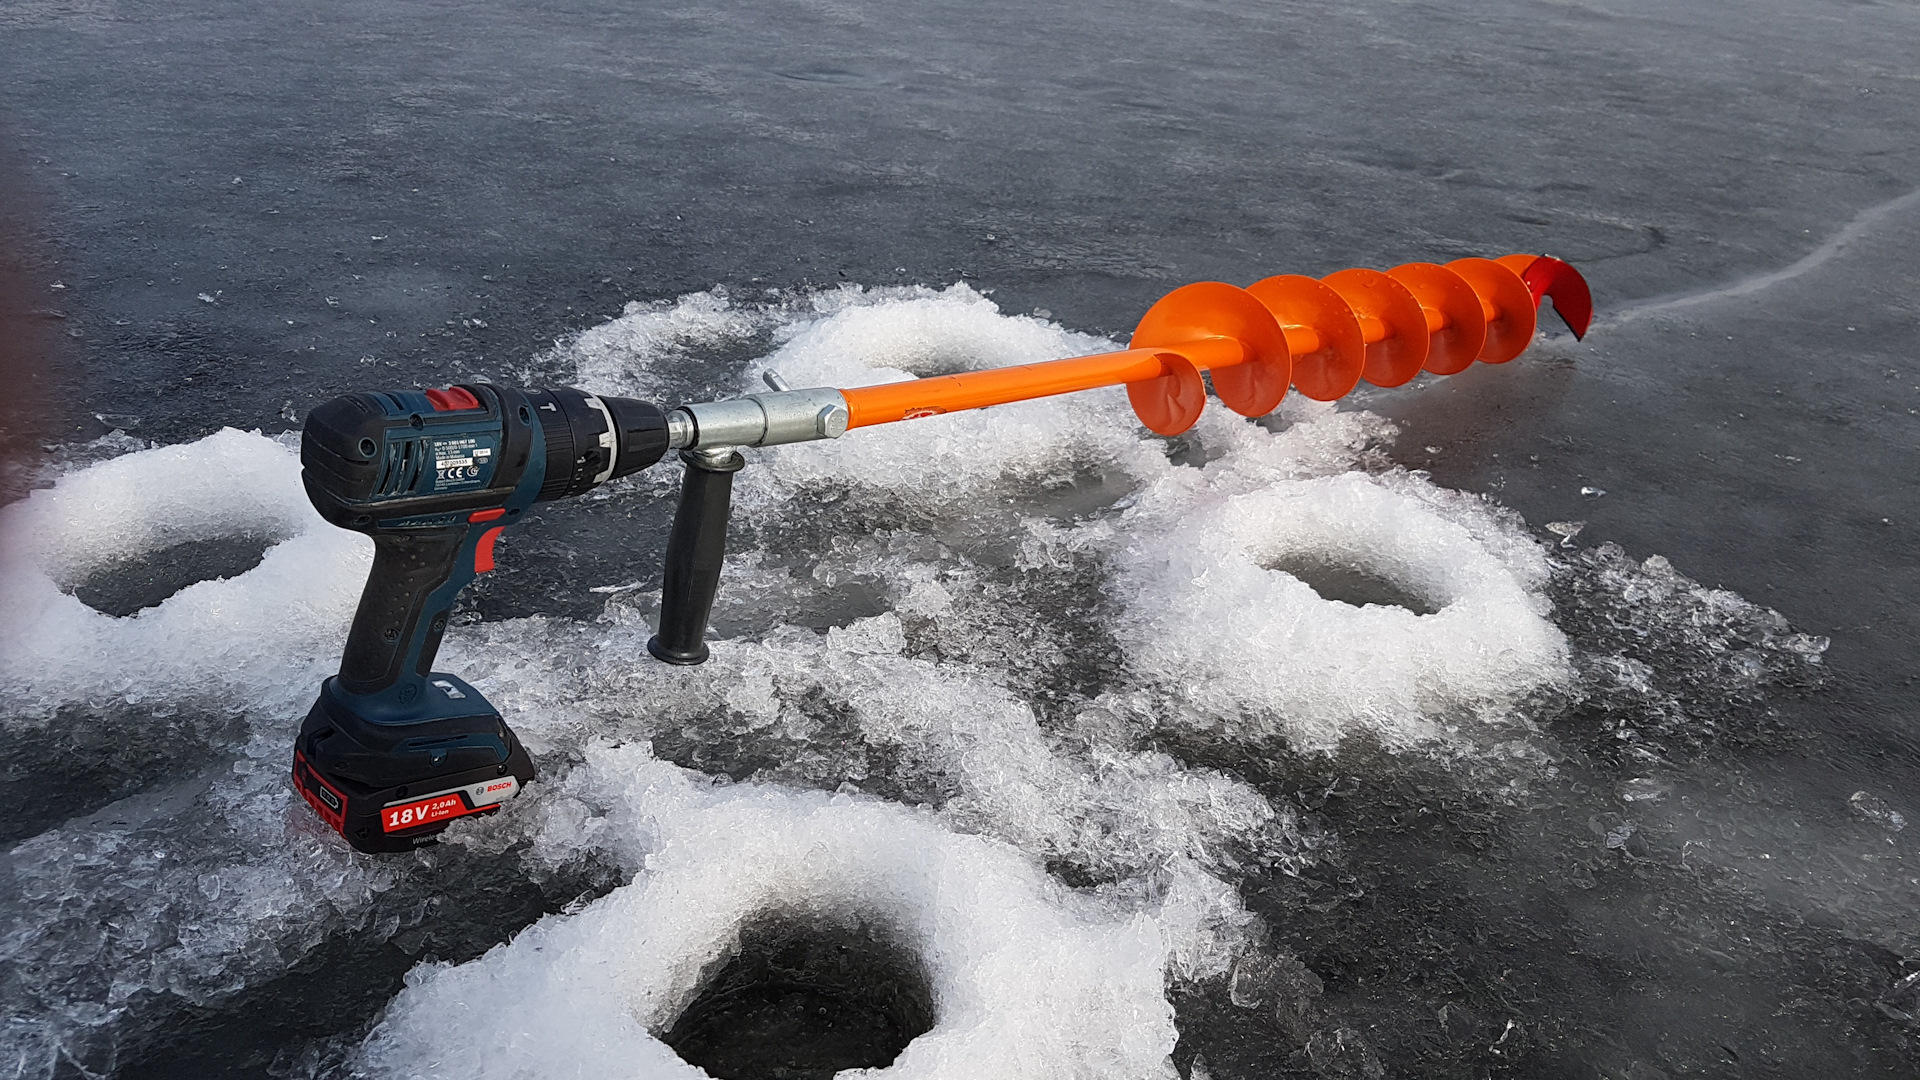 Classement des meilleures visseuses perceuses à glace pour la pêche sur glace en 2022